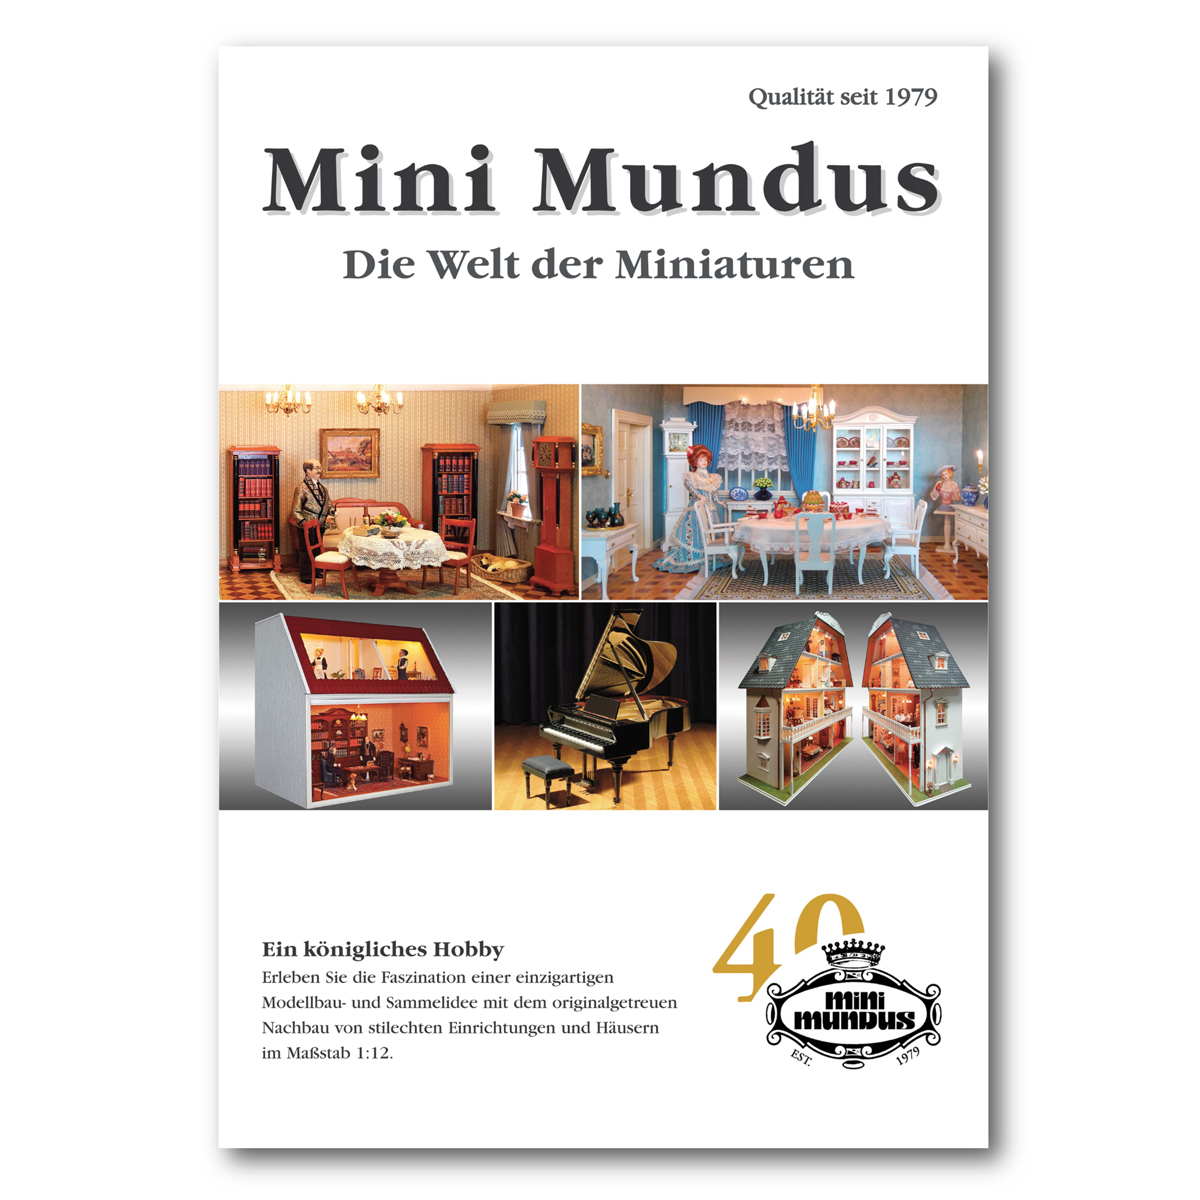 Mini Mundus Catalog